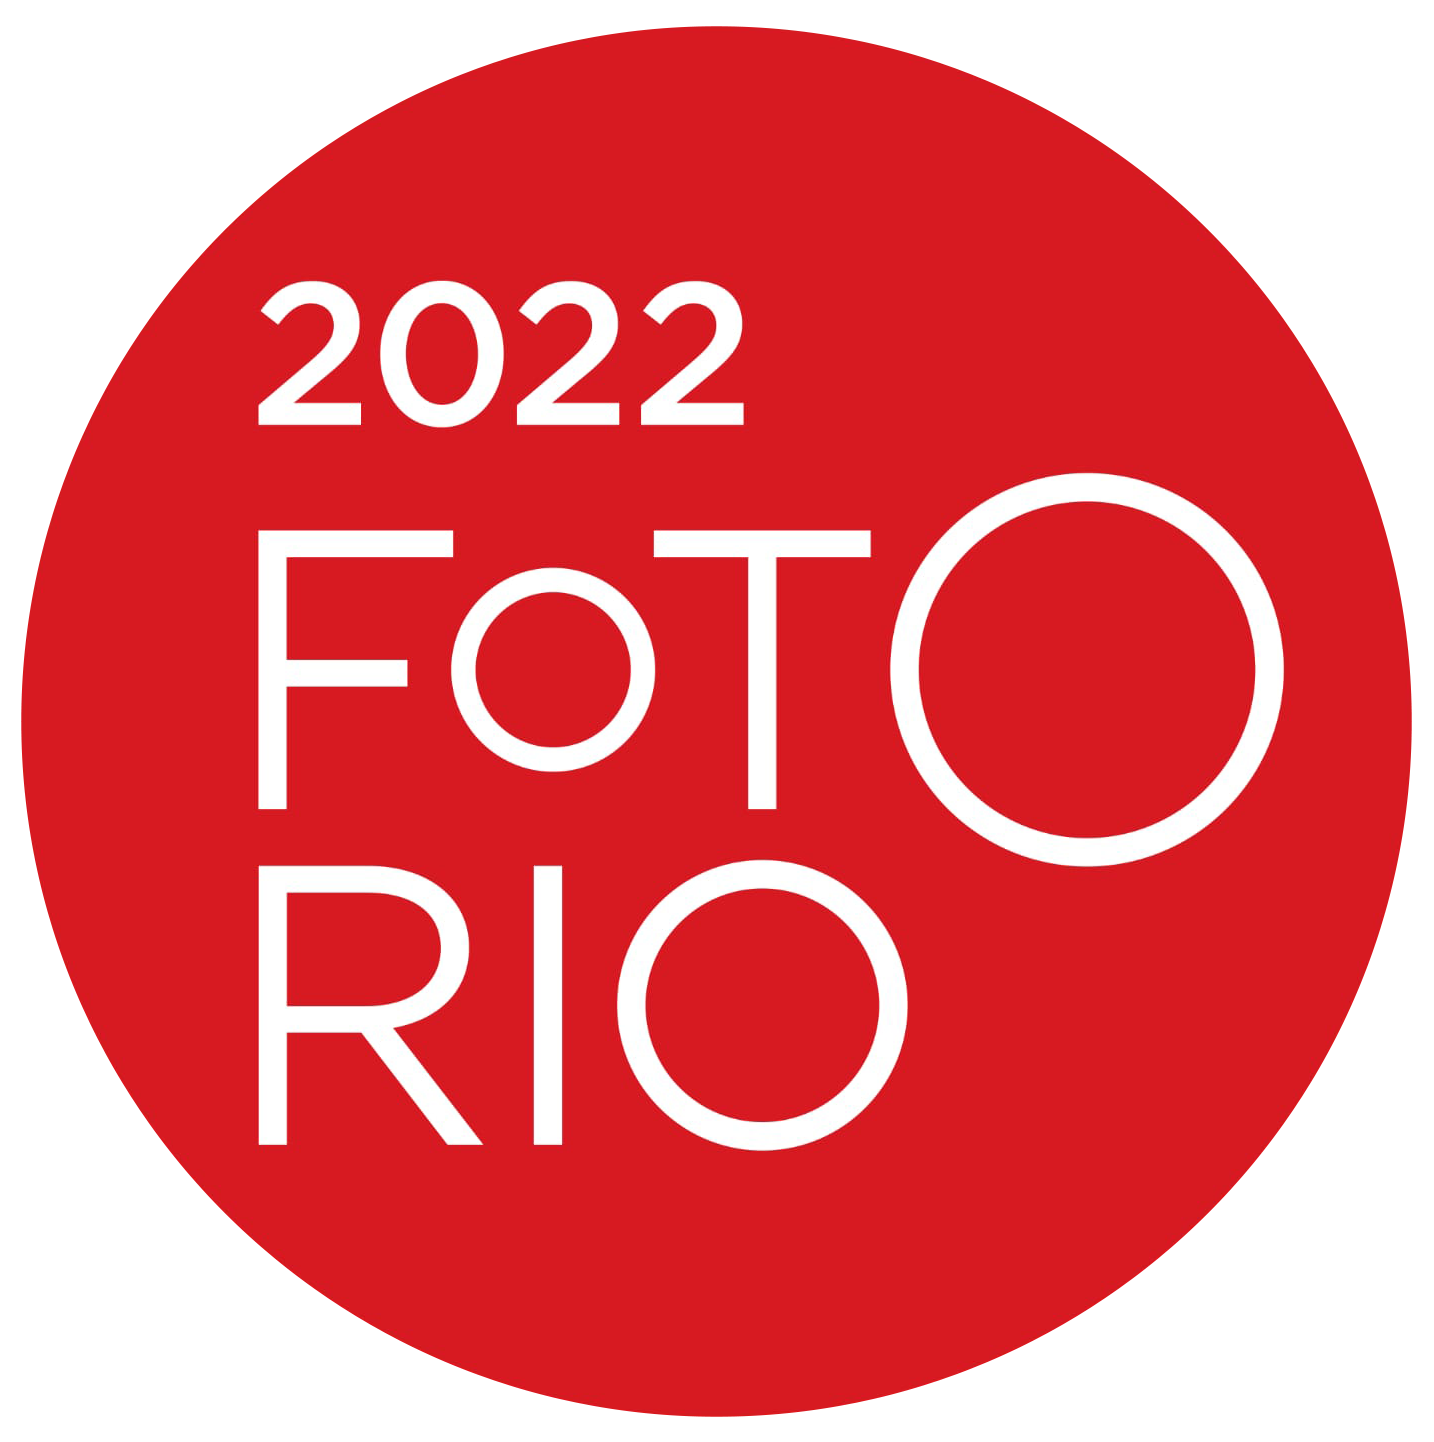 FotoRio2020